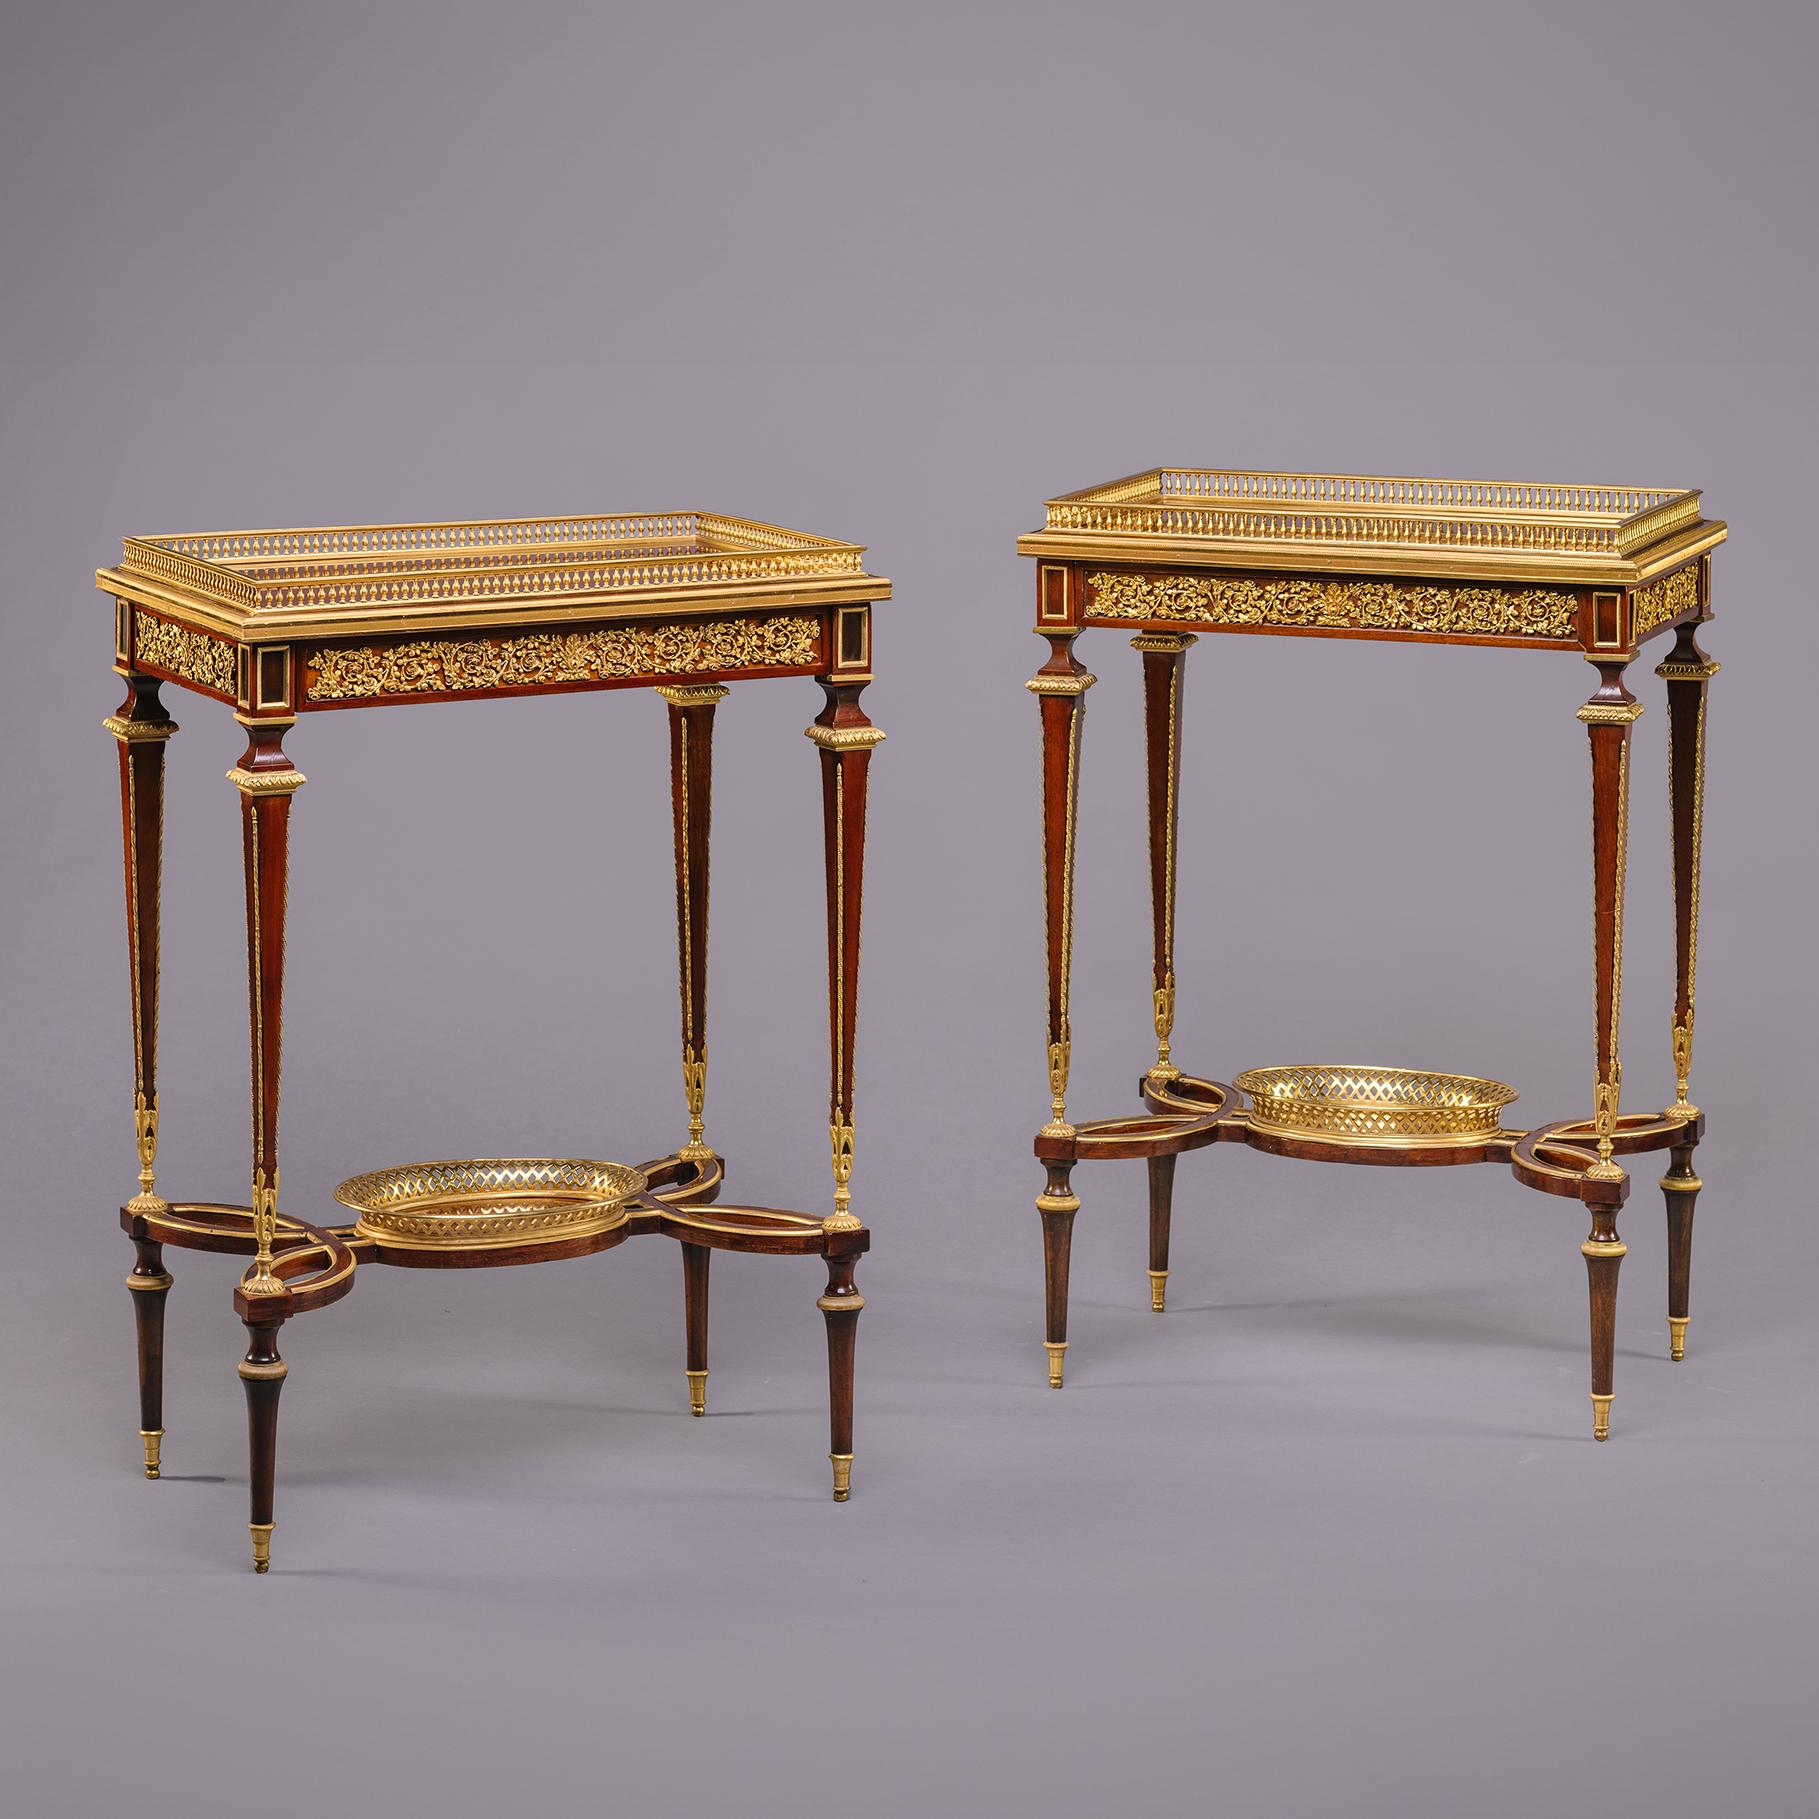 Paire de tables d'appoint de style Louis XVI en acajou et bronze doré, attribuées à Henry Dasson. 

France Circa 1880.

Henry Dasson (1825-1896) est l'un des meilleurs fabricants de meubles montés en bronze doré du XIXe siècle. Contrairement à